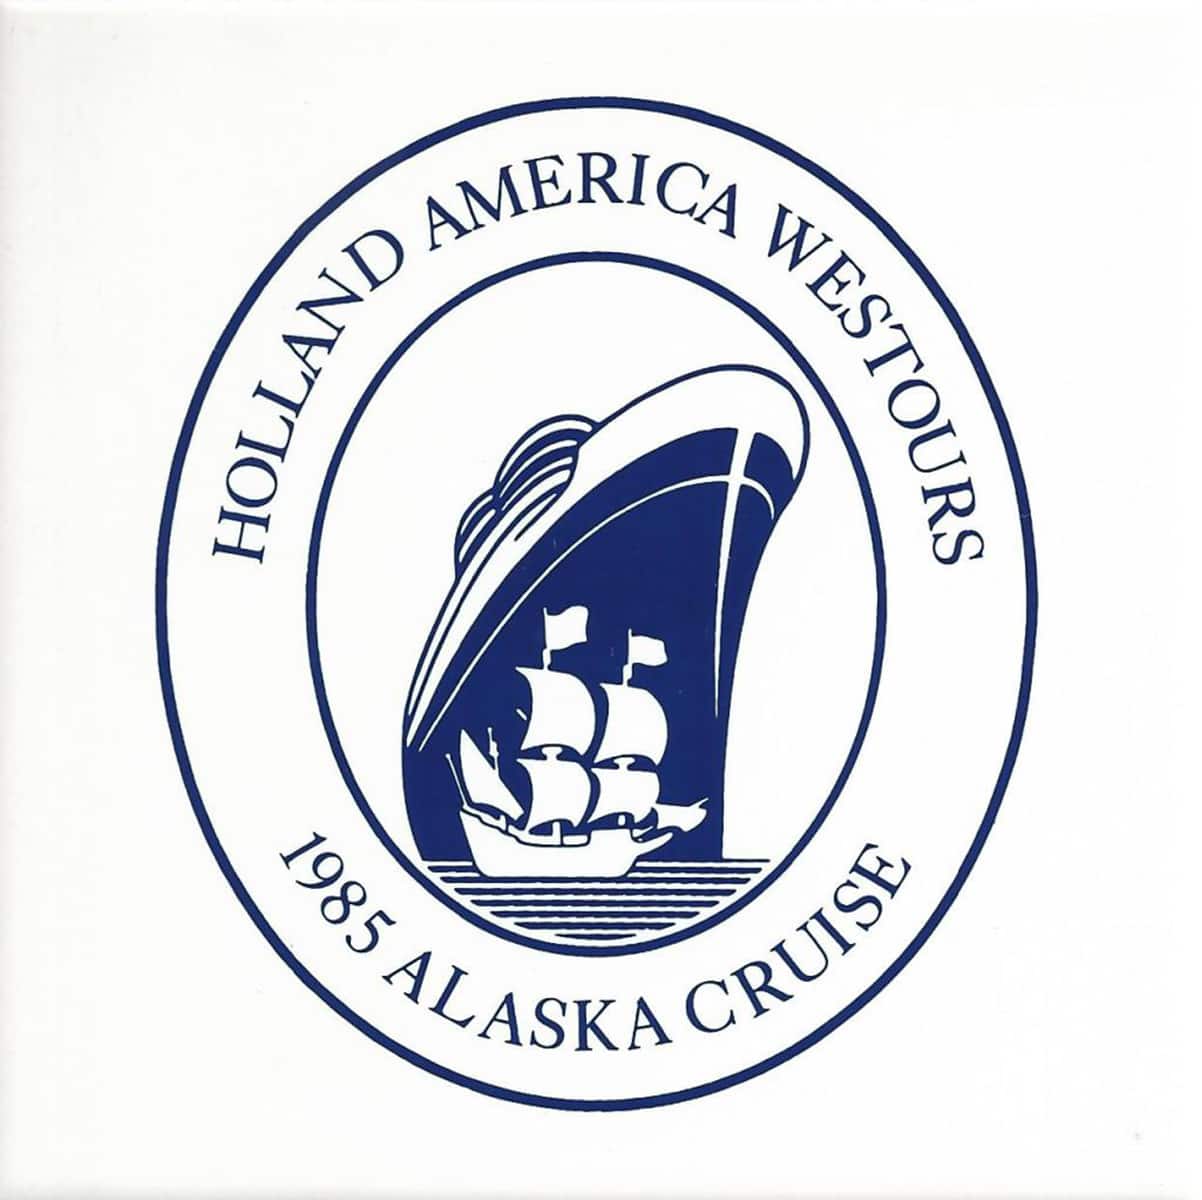 Holland America Westours 1985 Alaska Cruise commemorative tile